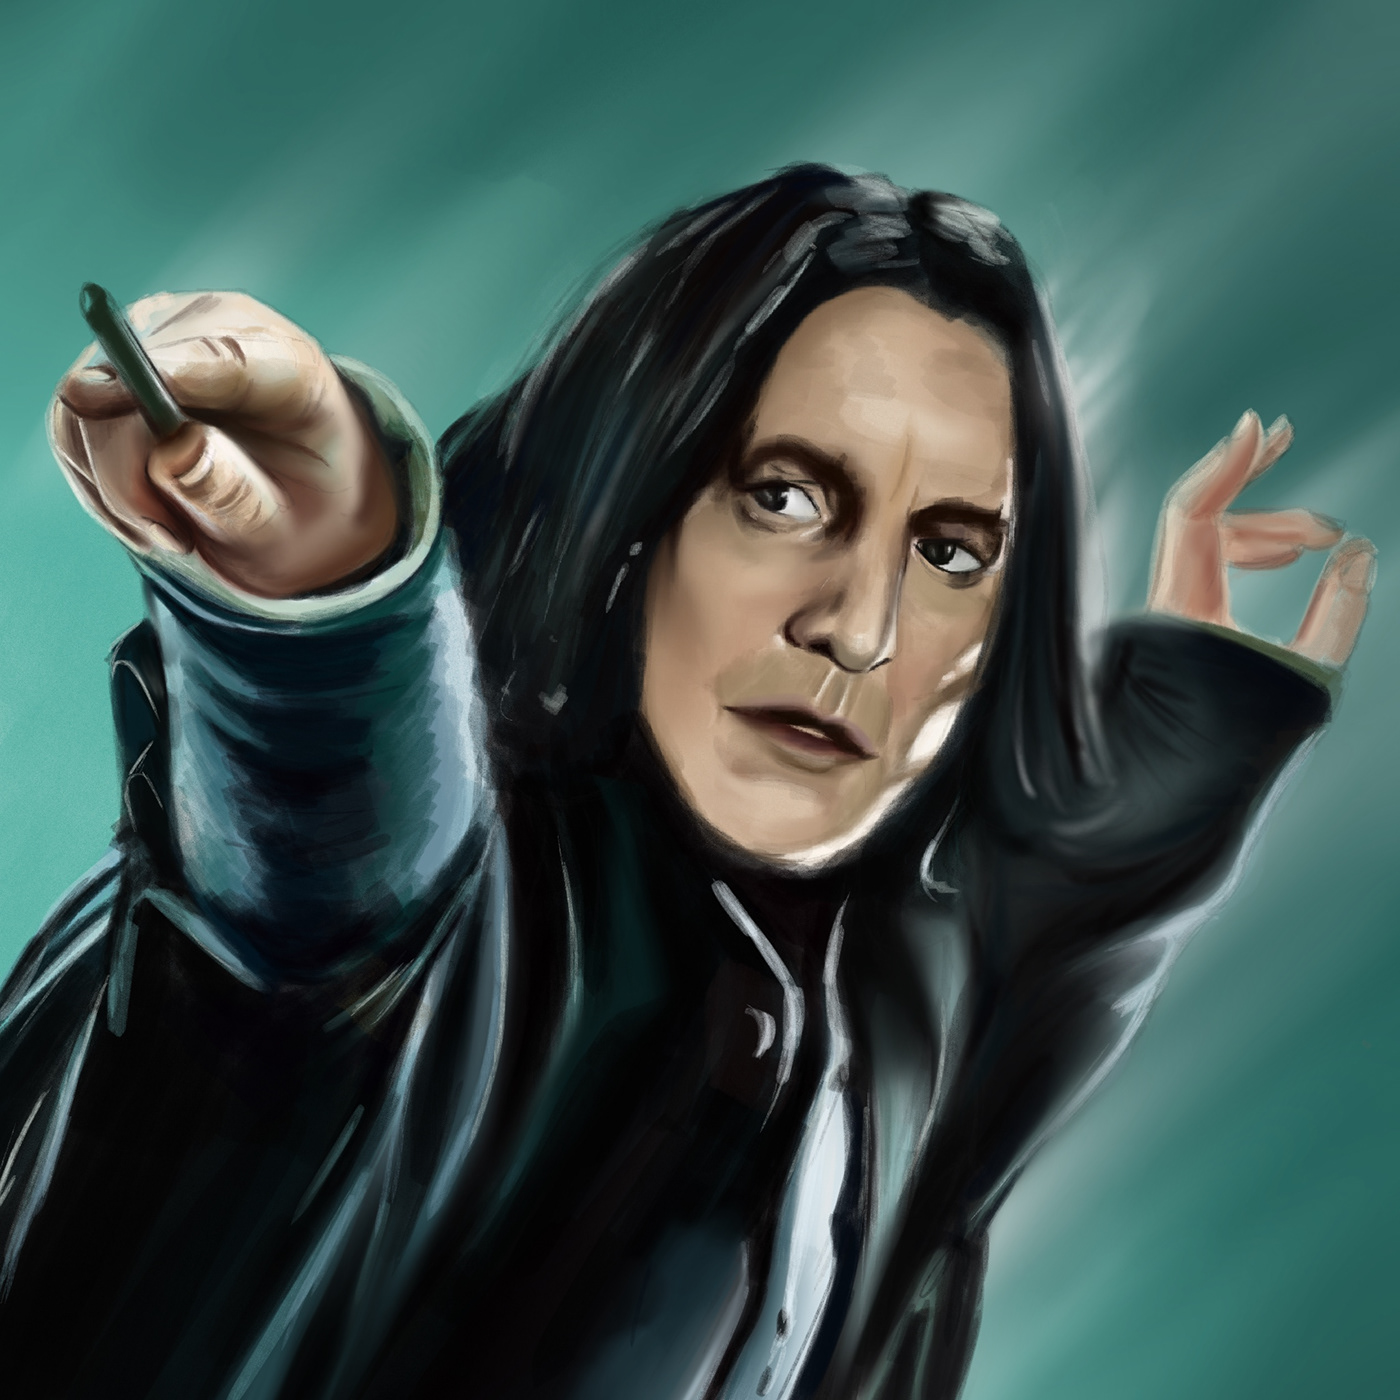 Severus Snape harry potter Slytherin Hogwarts Magic   fantasy Digital Art  Character design  cartoon digital illustration